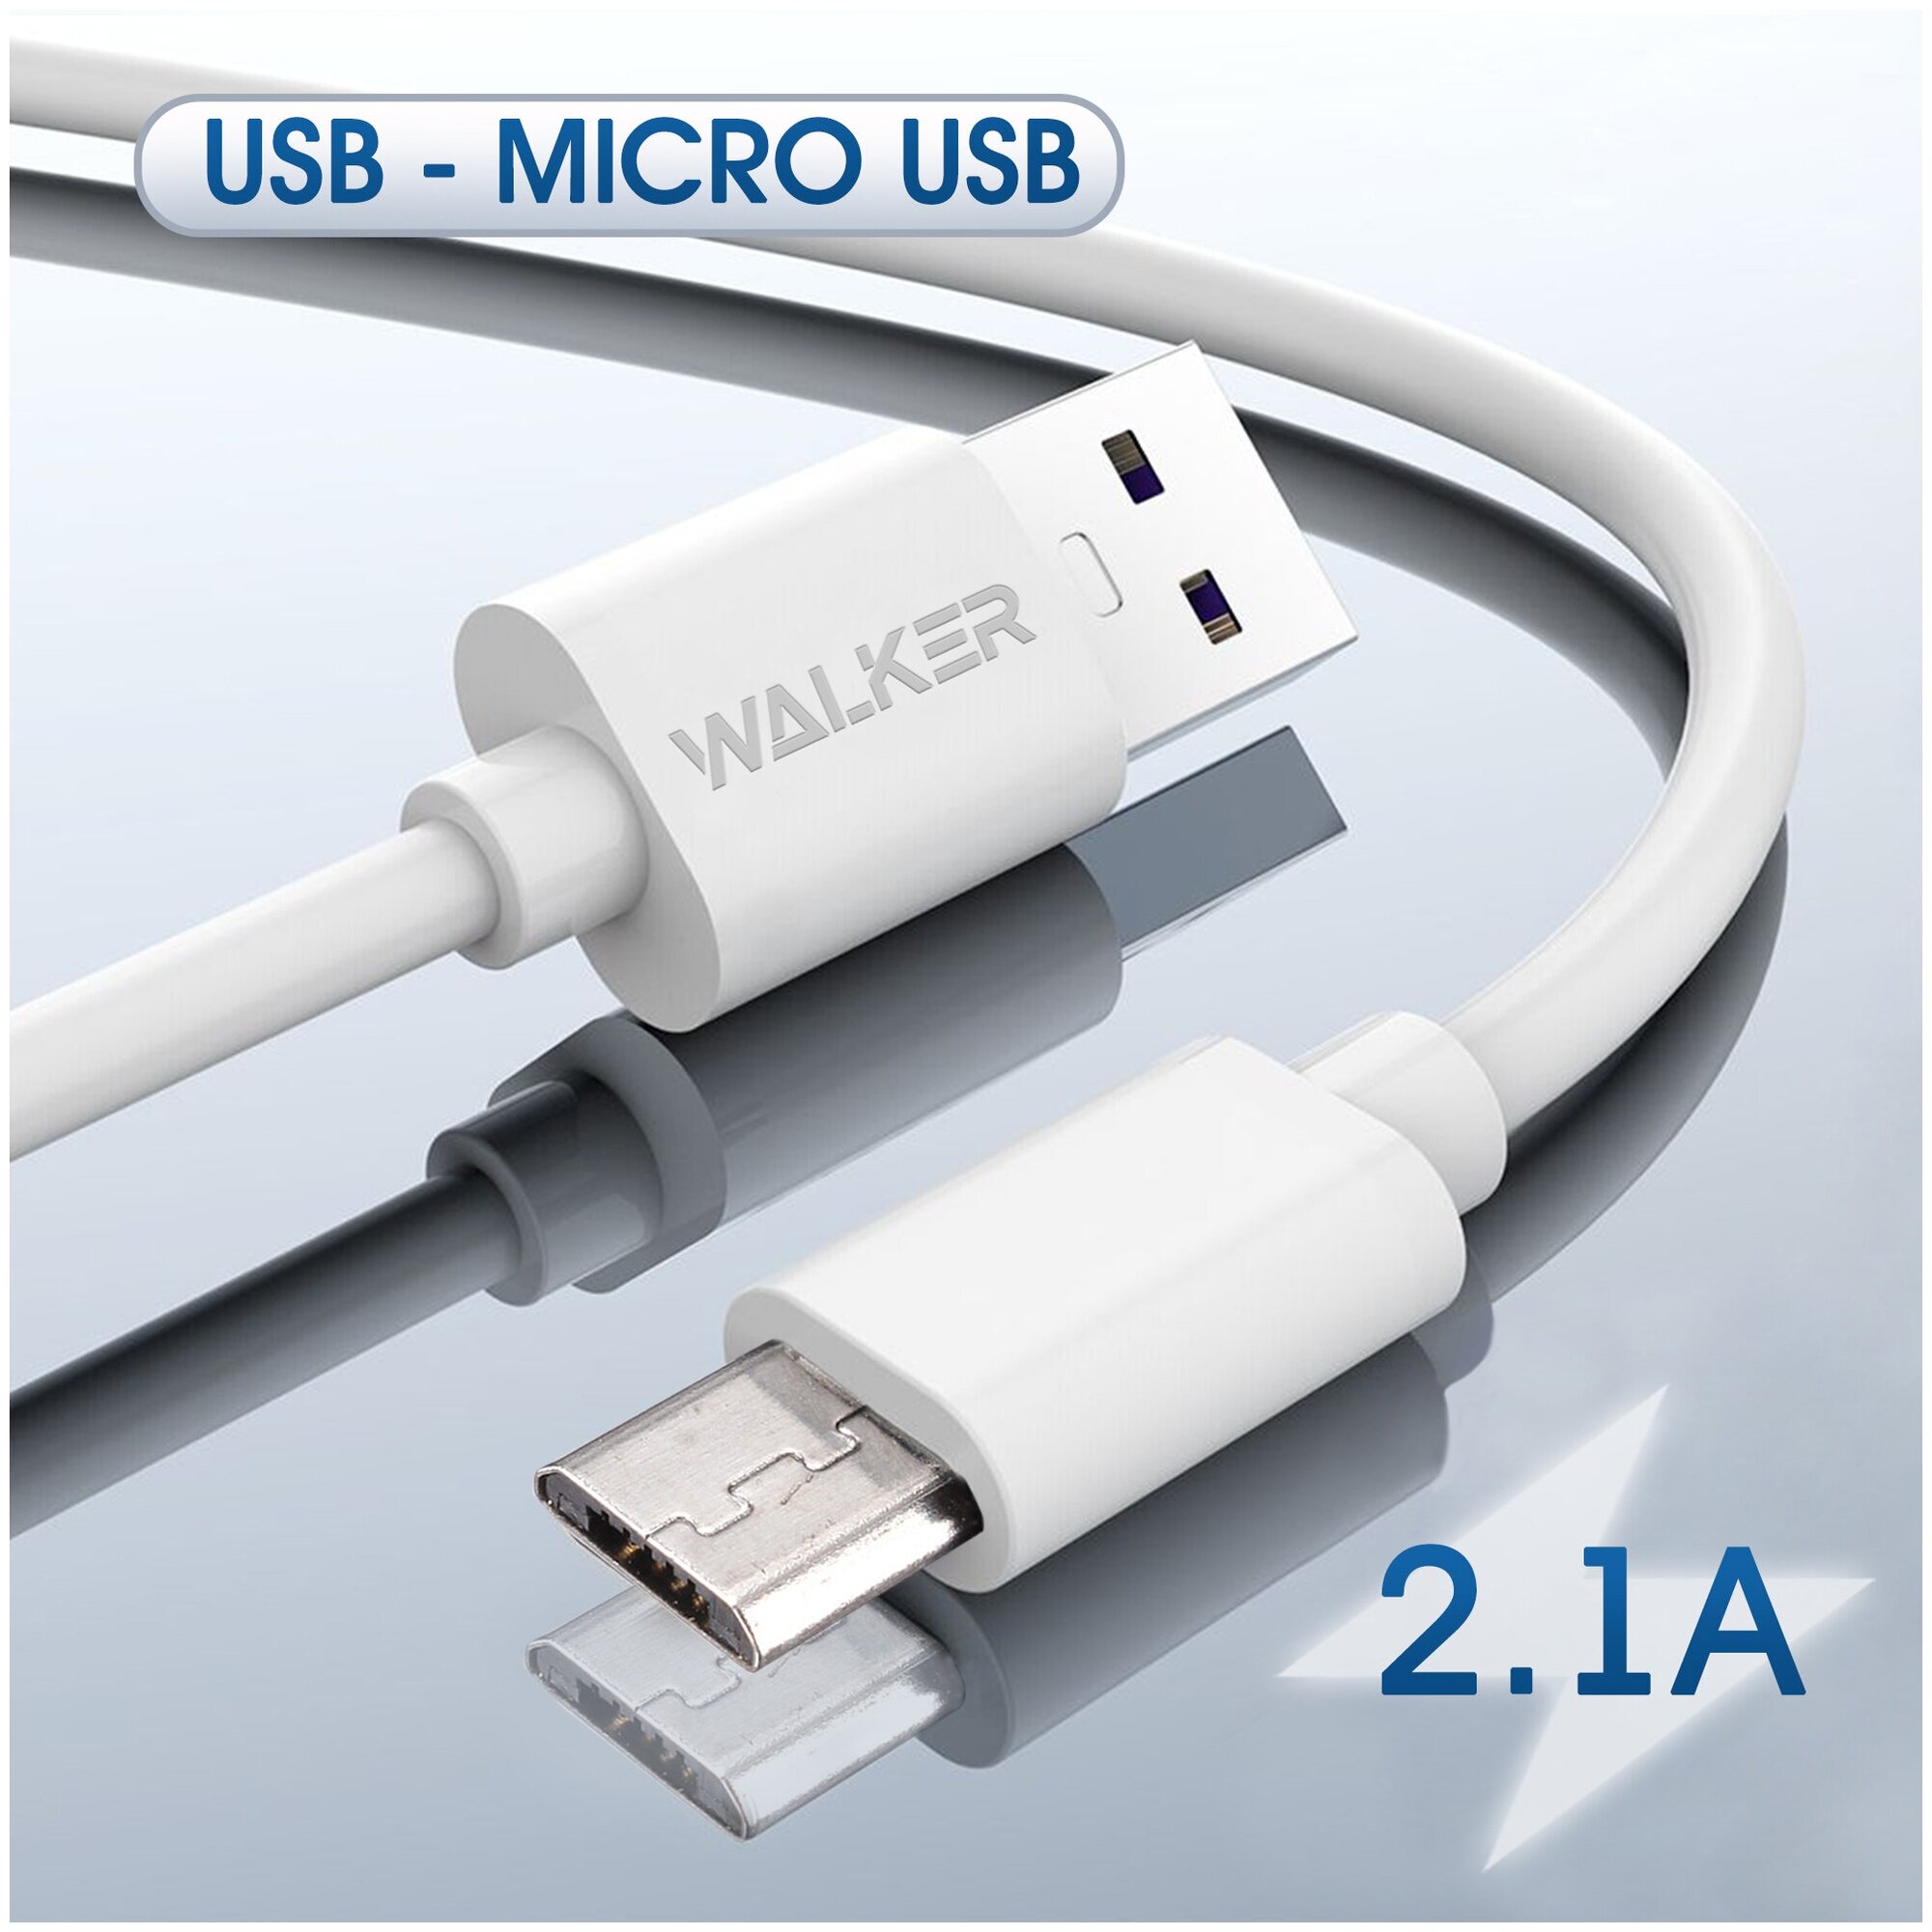 Кабель для зарядки USB - Micro USB для android, WALKER, С110 , 2.1 А, 1м, белый / зарядной провод питания, шнур для питания телефона, смартфона